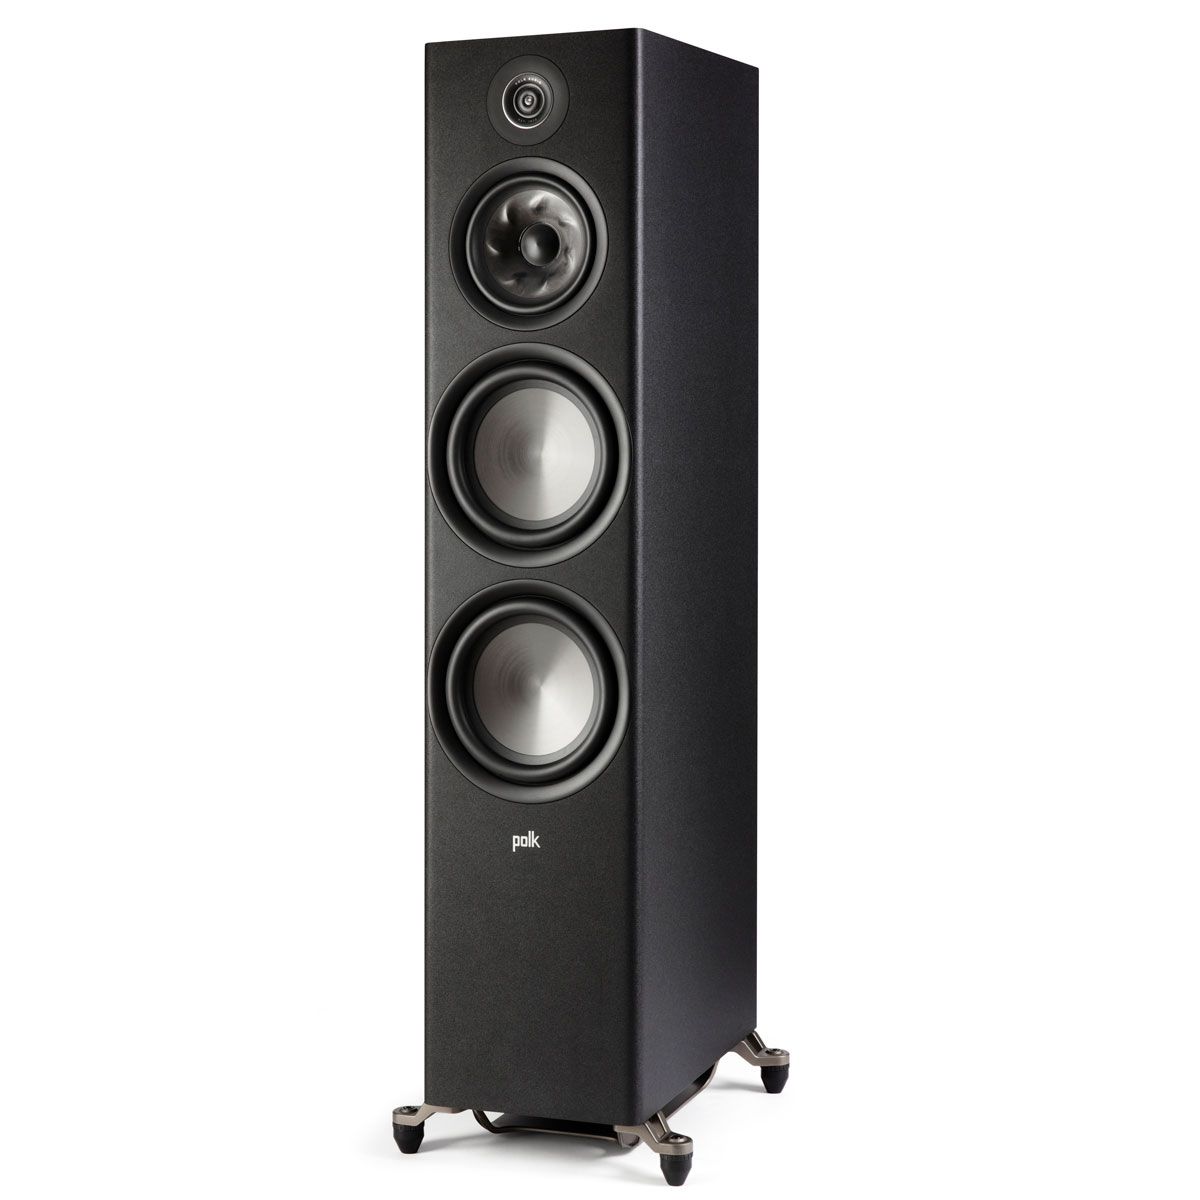 Polk Audio Reserve R700 Floorstanding Speaker, Black, front left angle